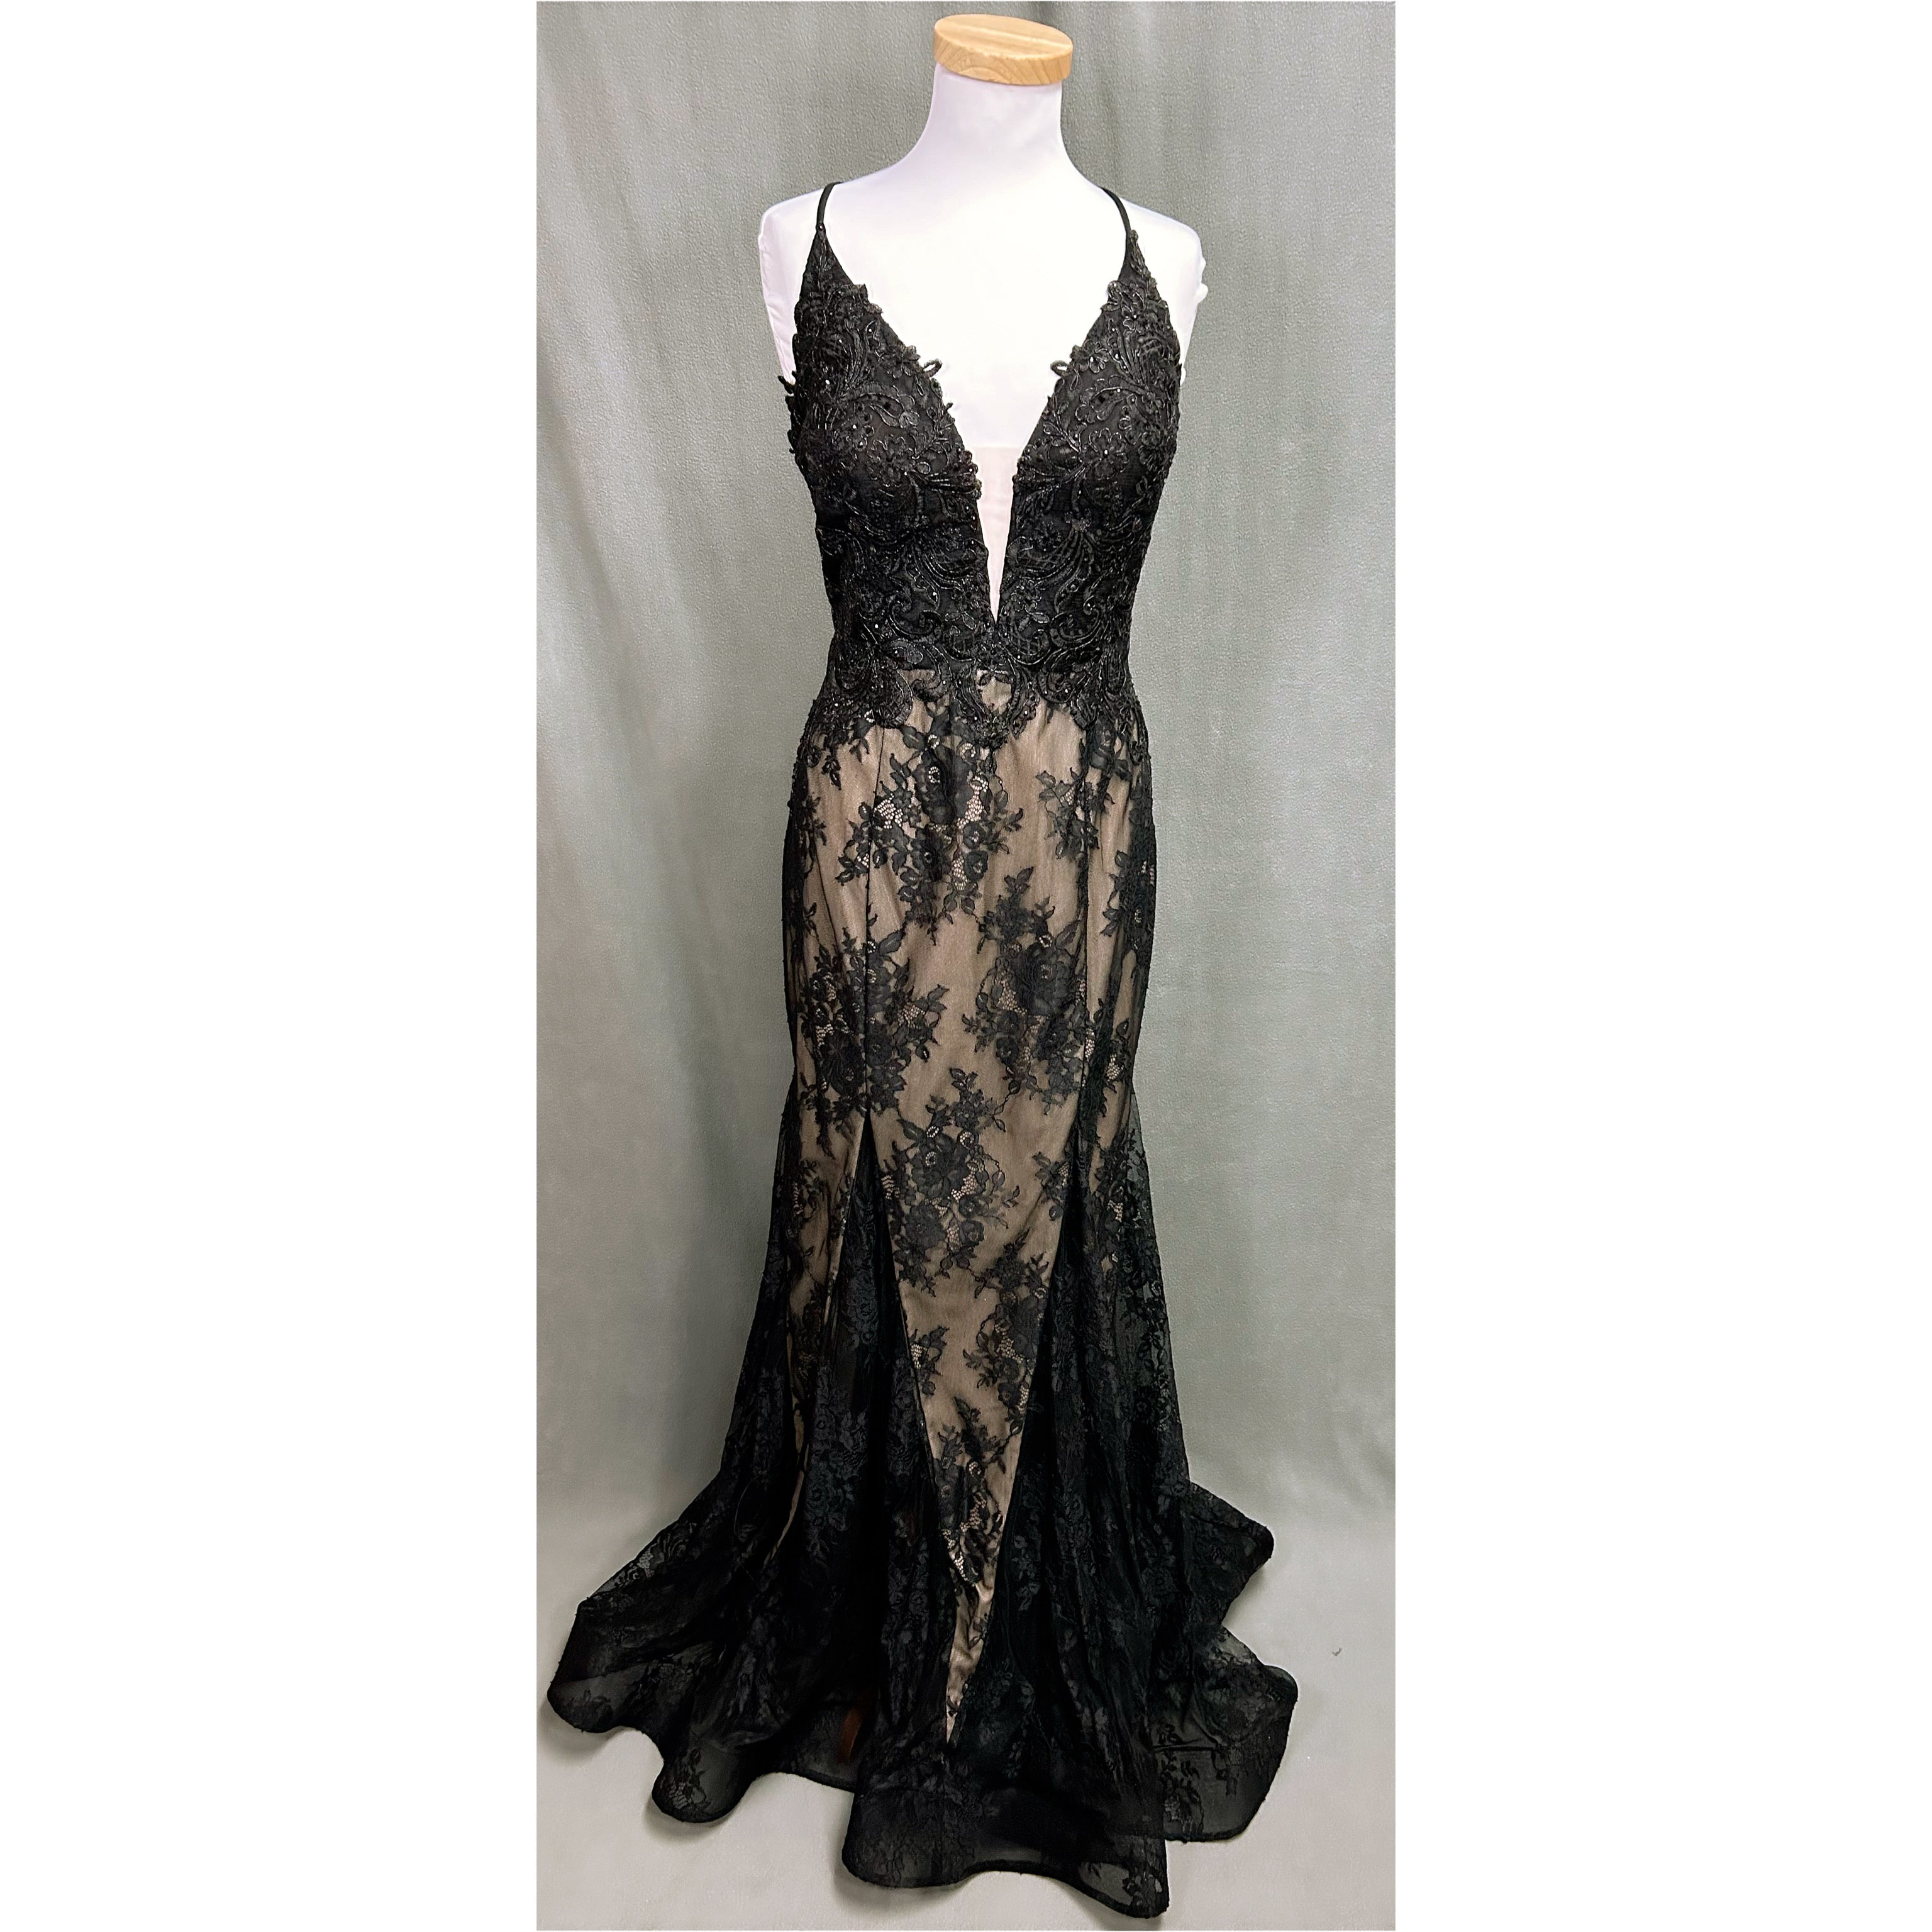 Mori Lee black dress, size 10